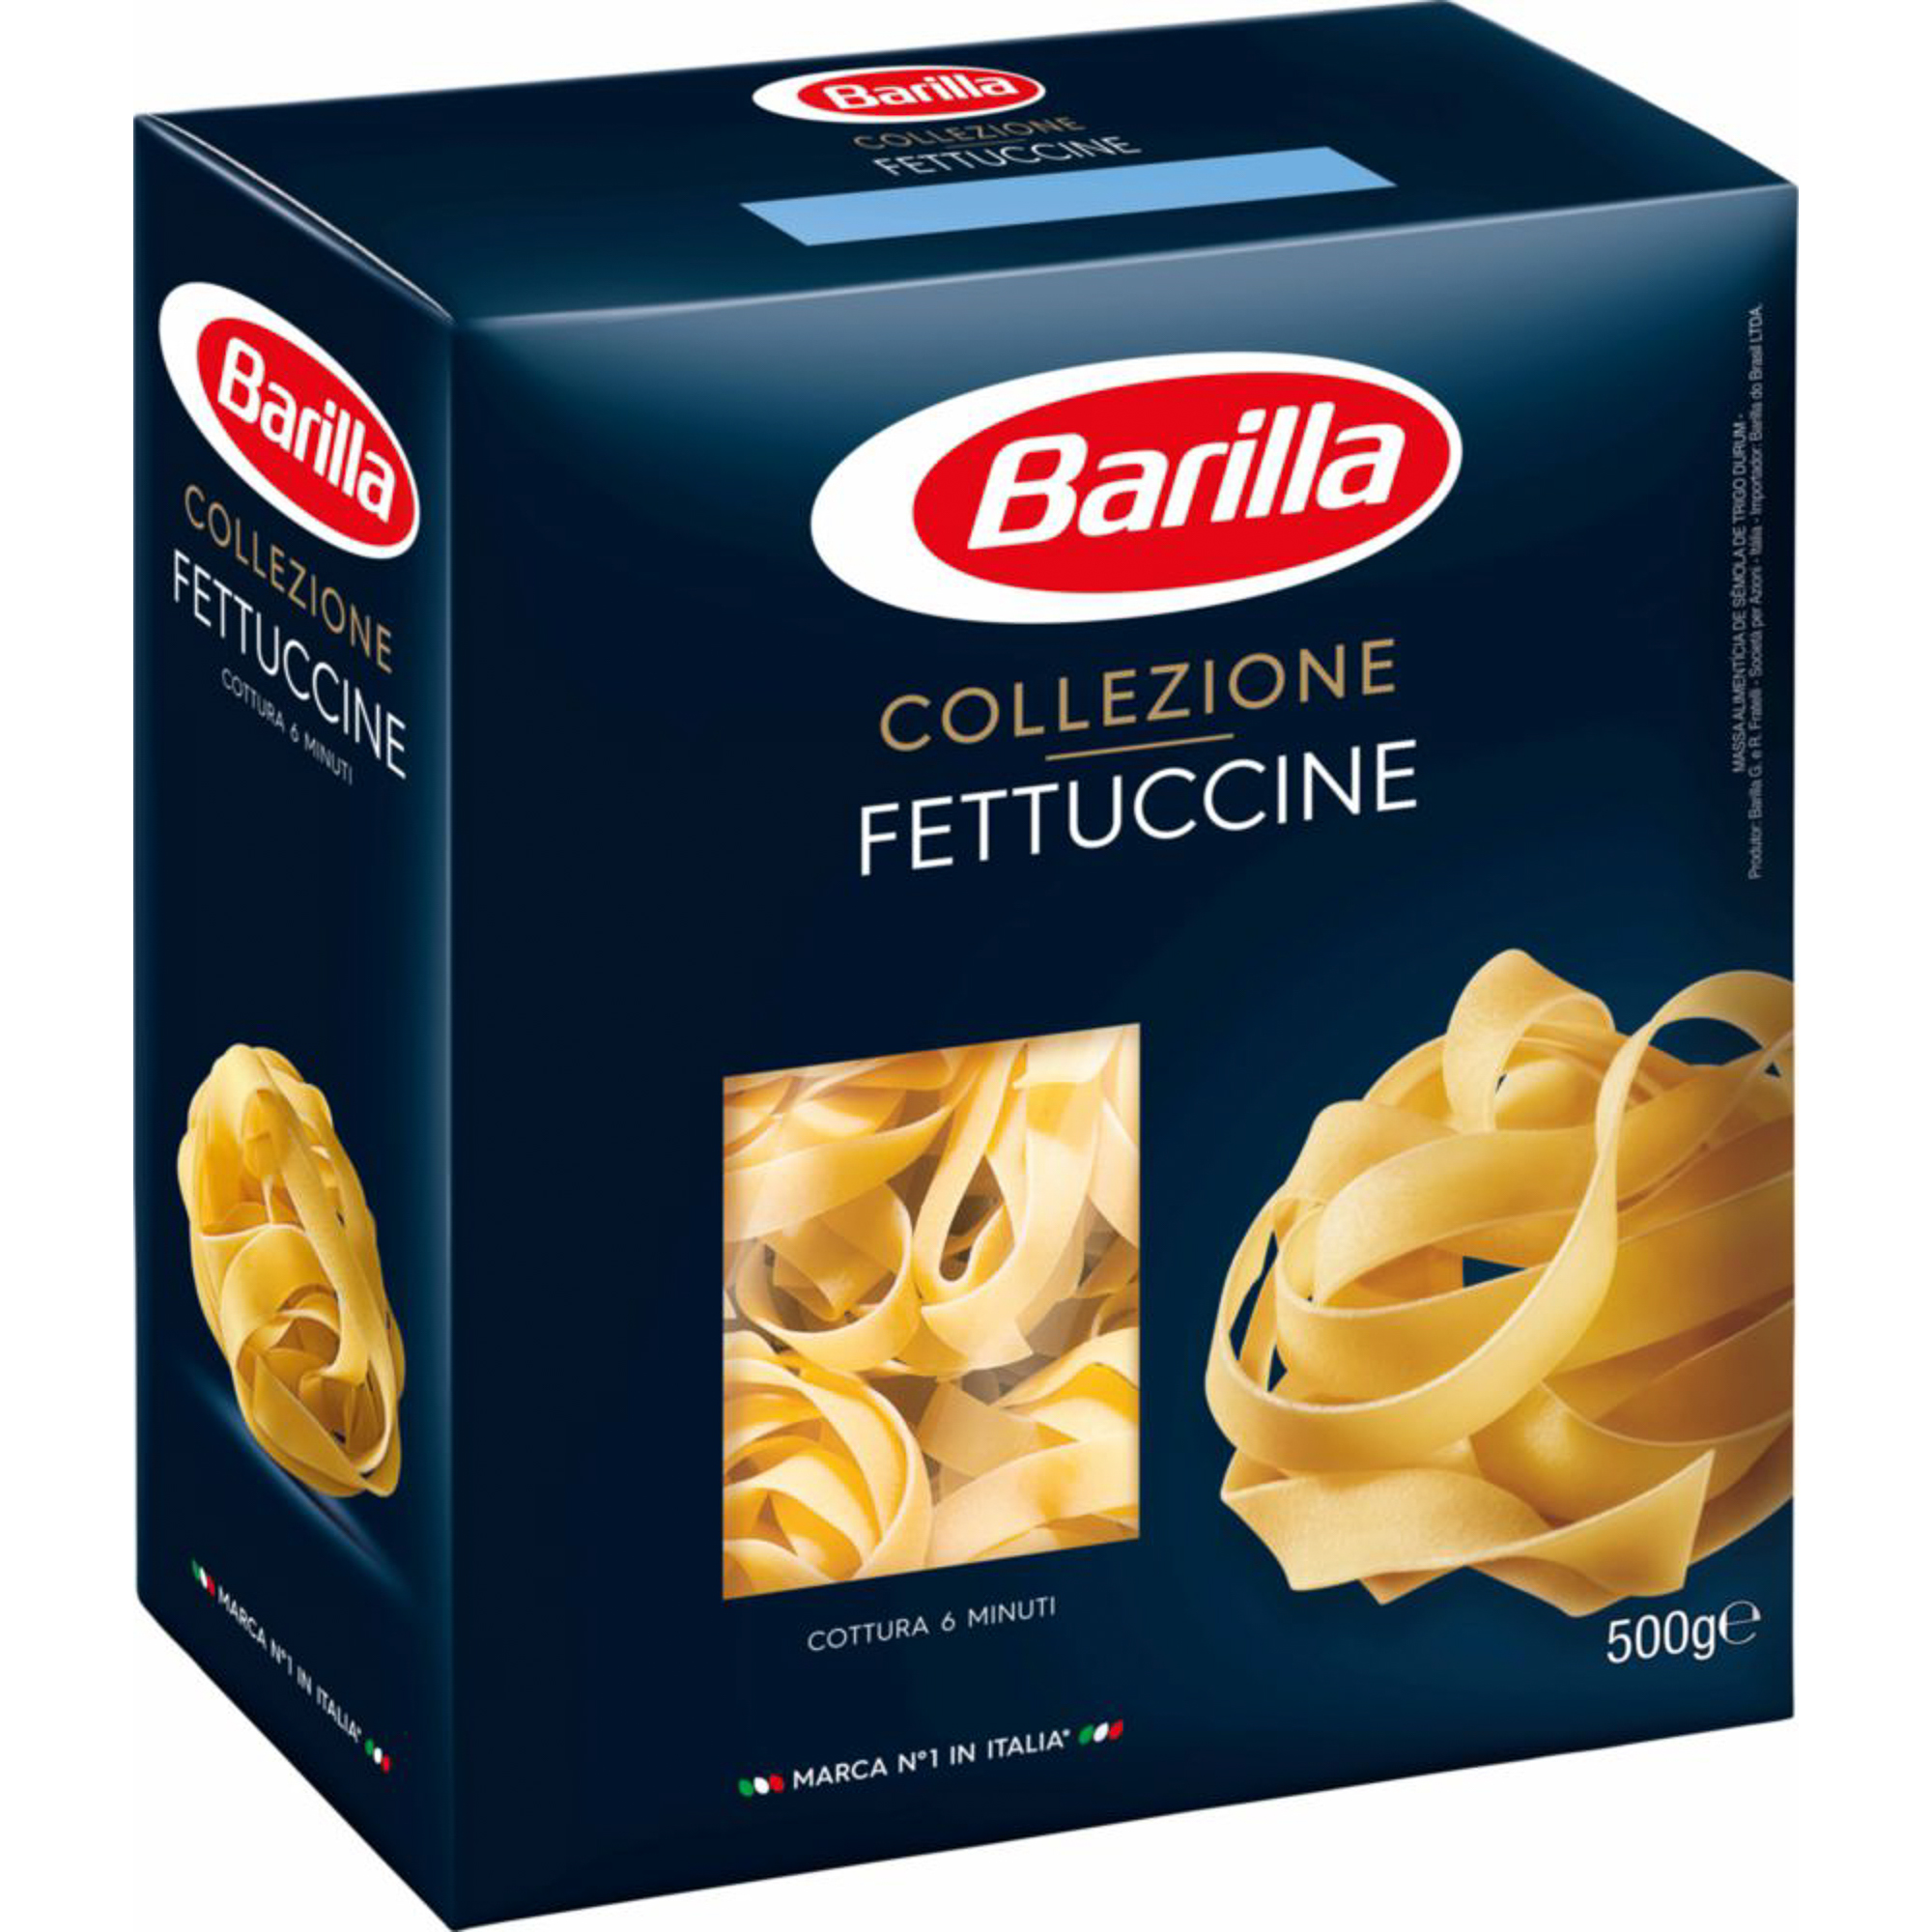 макаронные изделия barilla fusilli цельнозерновые 500 г Макаронные изделия Barilla Collezione Fettuccine 500 г